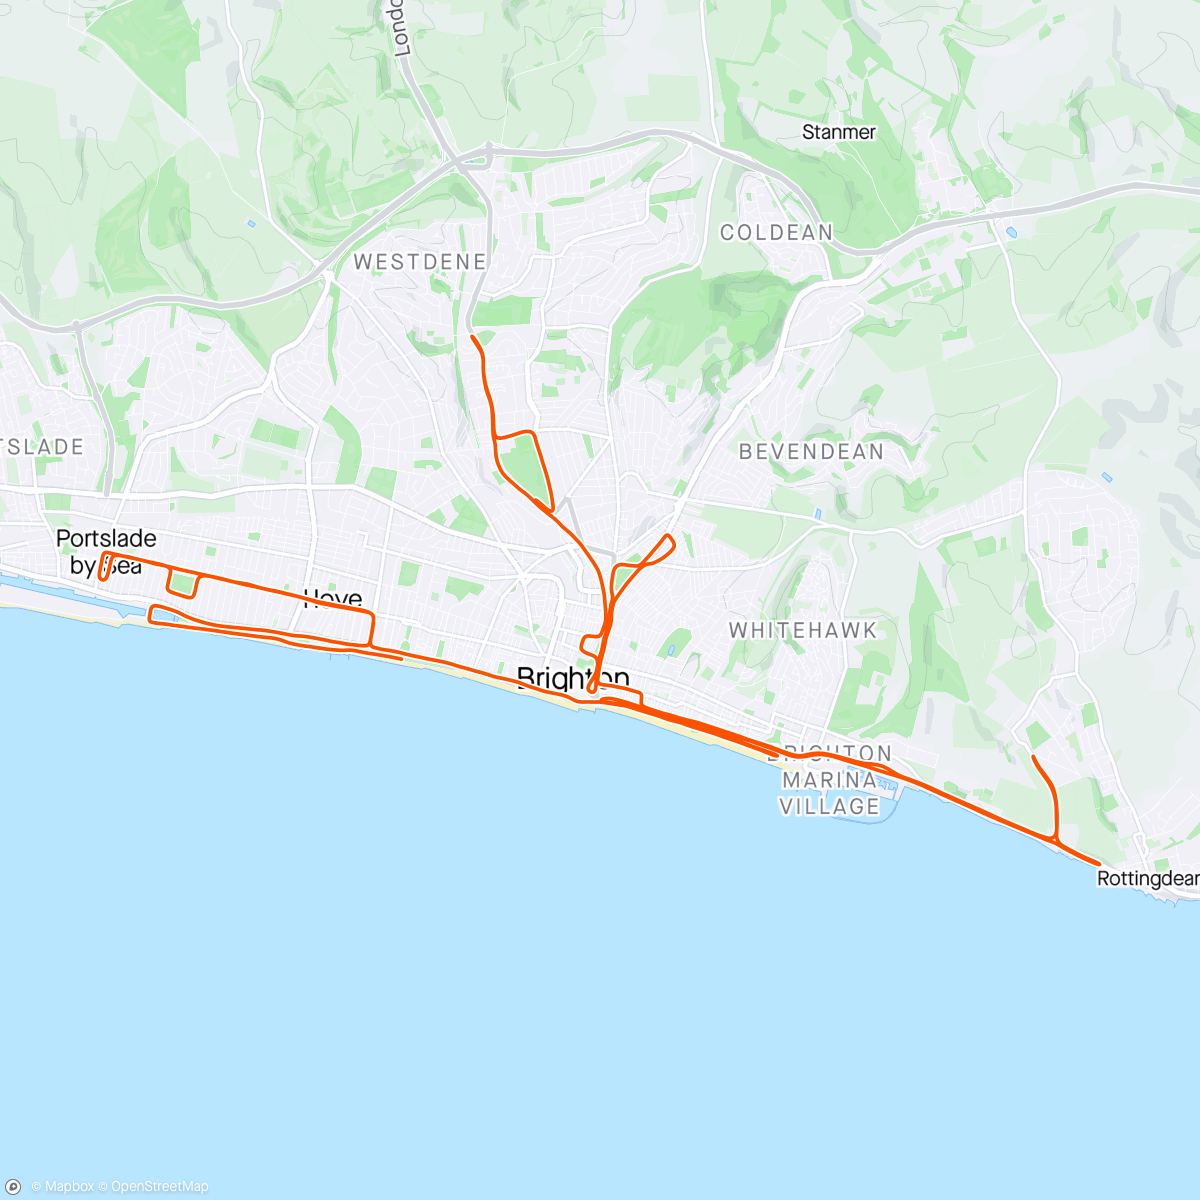 「Brighton Marathon」活動的地圖